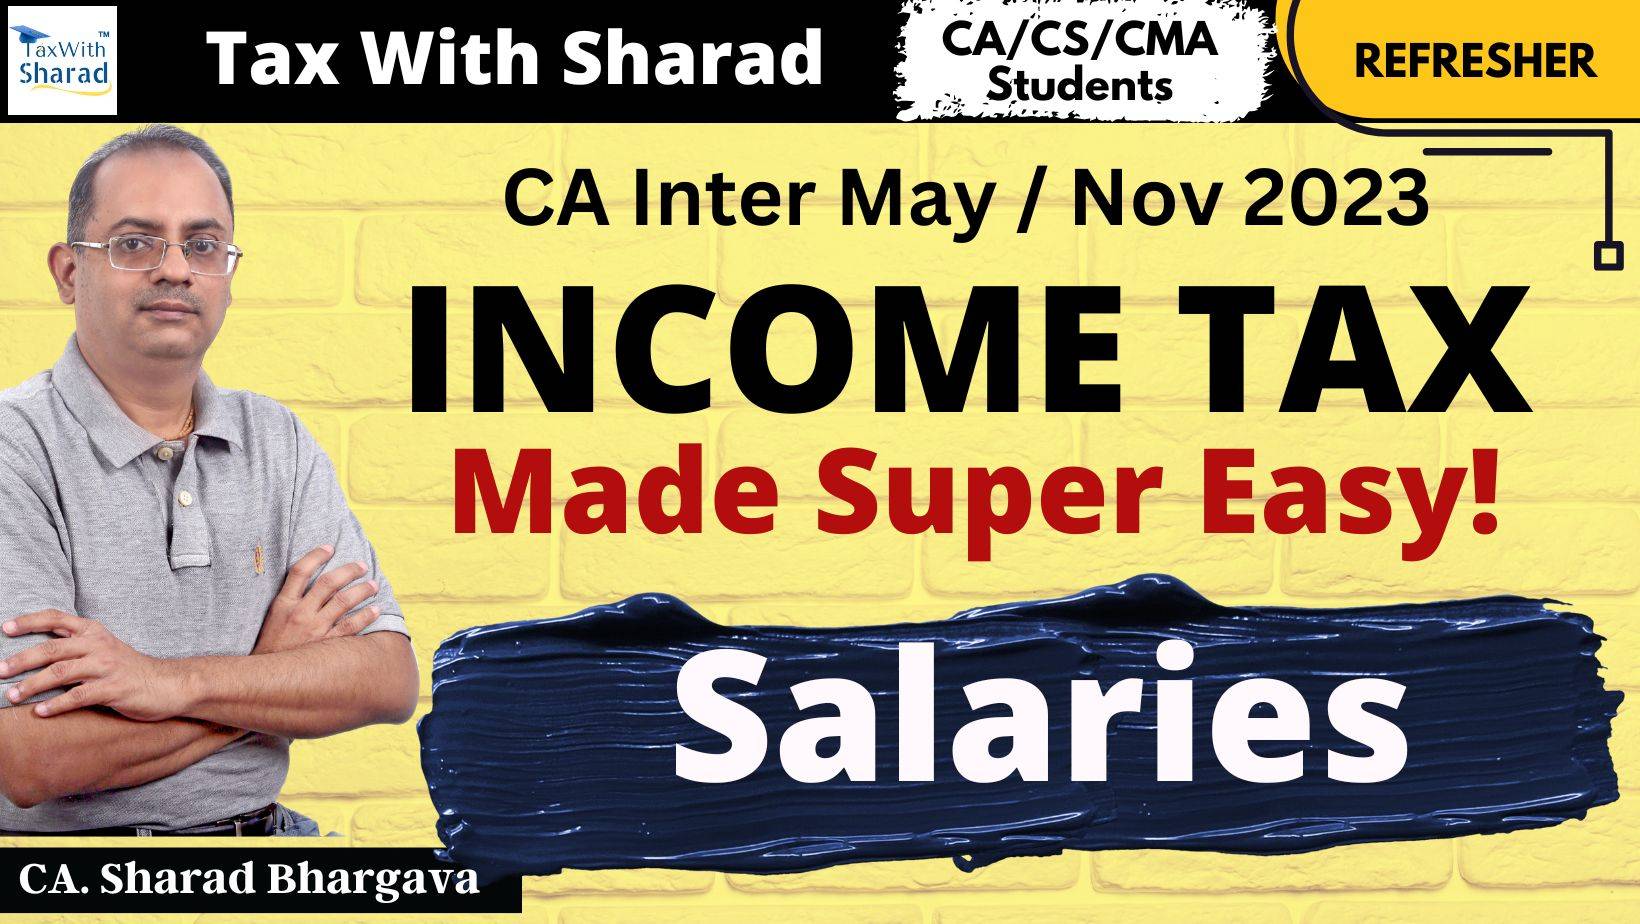 Refresher (DT) / Salaries / CA Inter May/Nov 2023 / CA. Sharad Bhargava